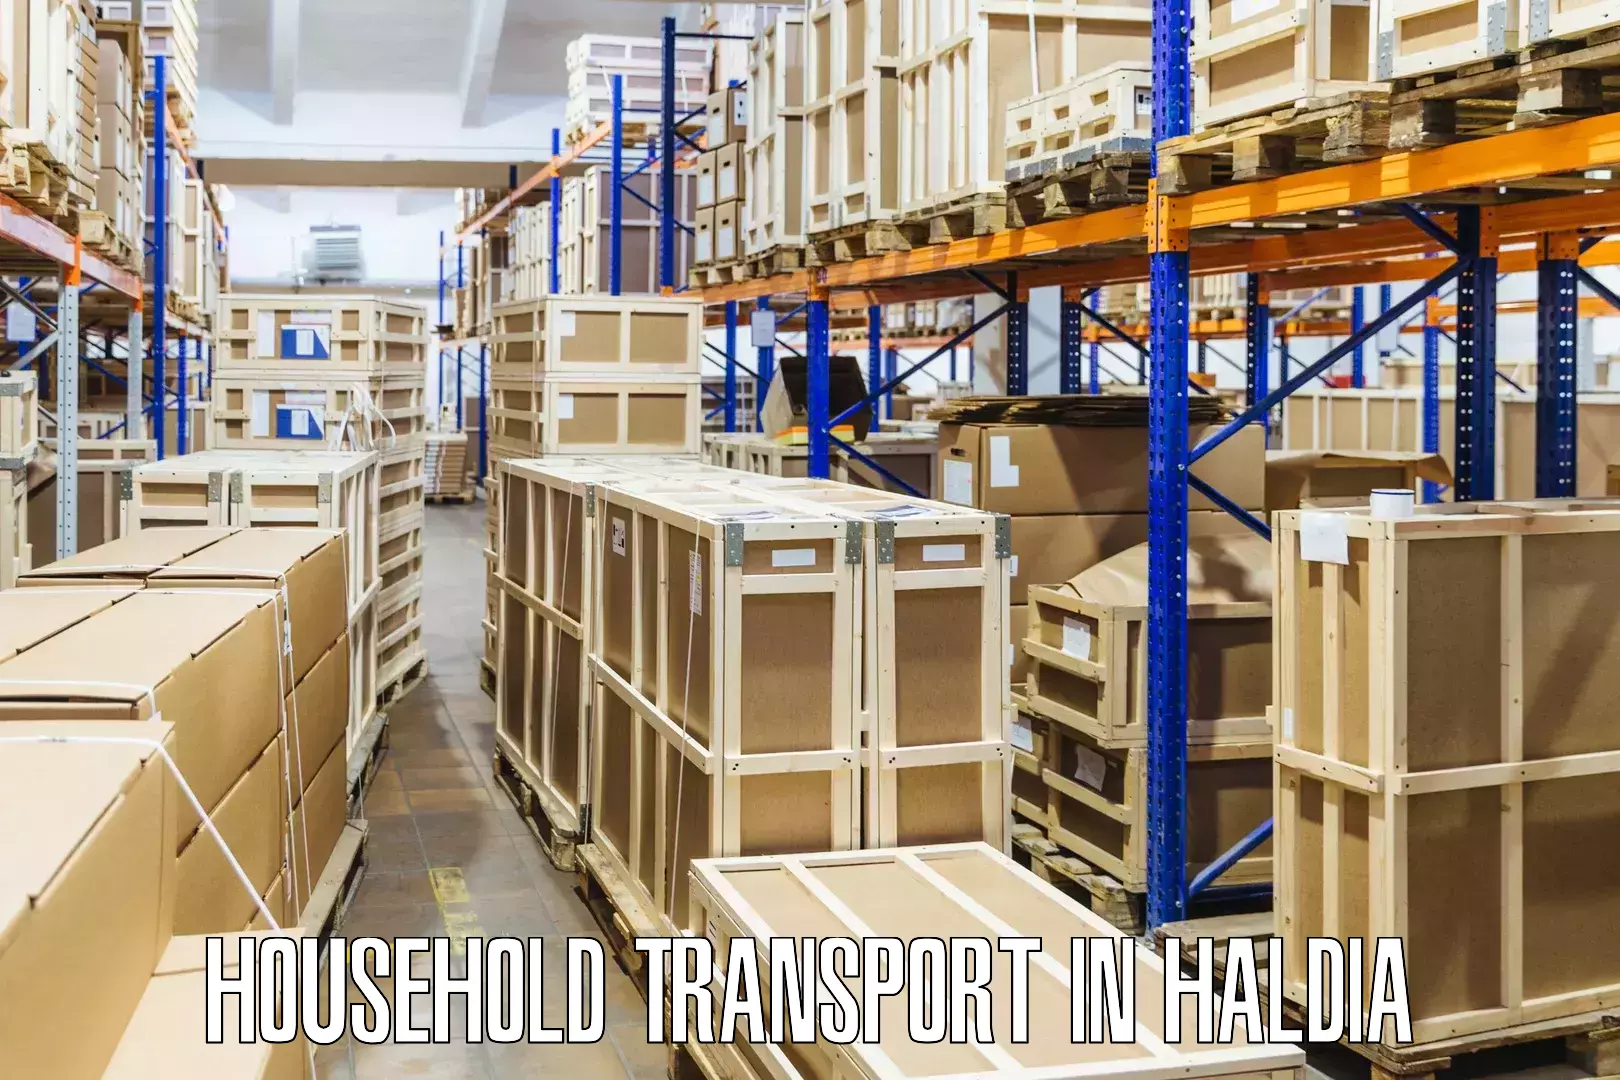 Reliable furniture transport in Haldia